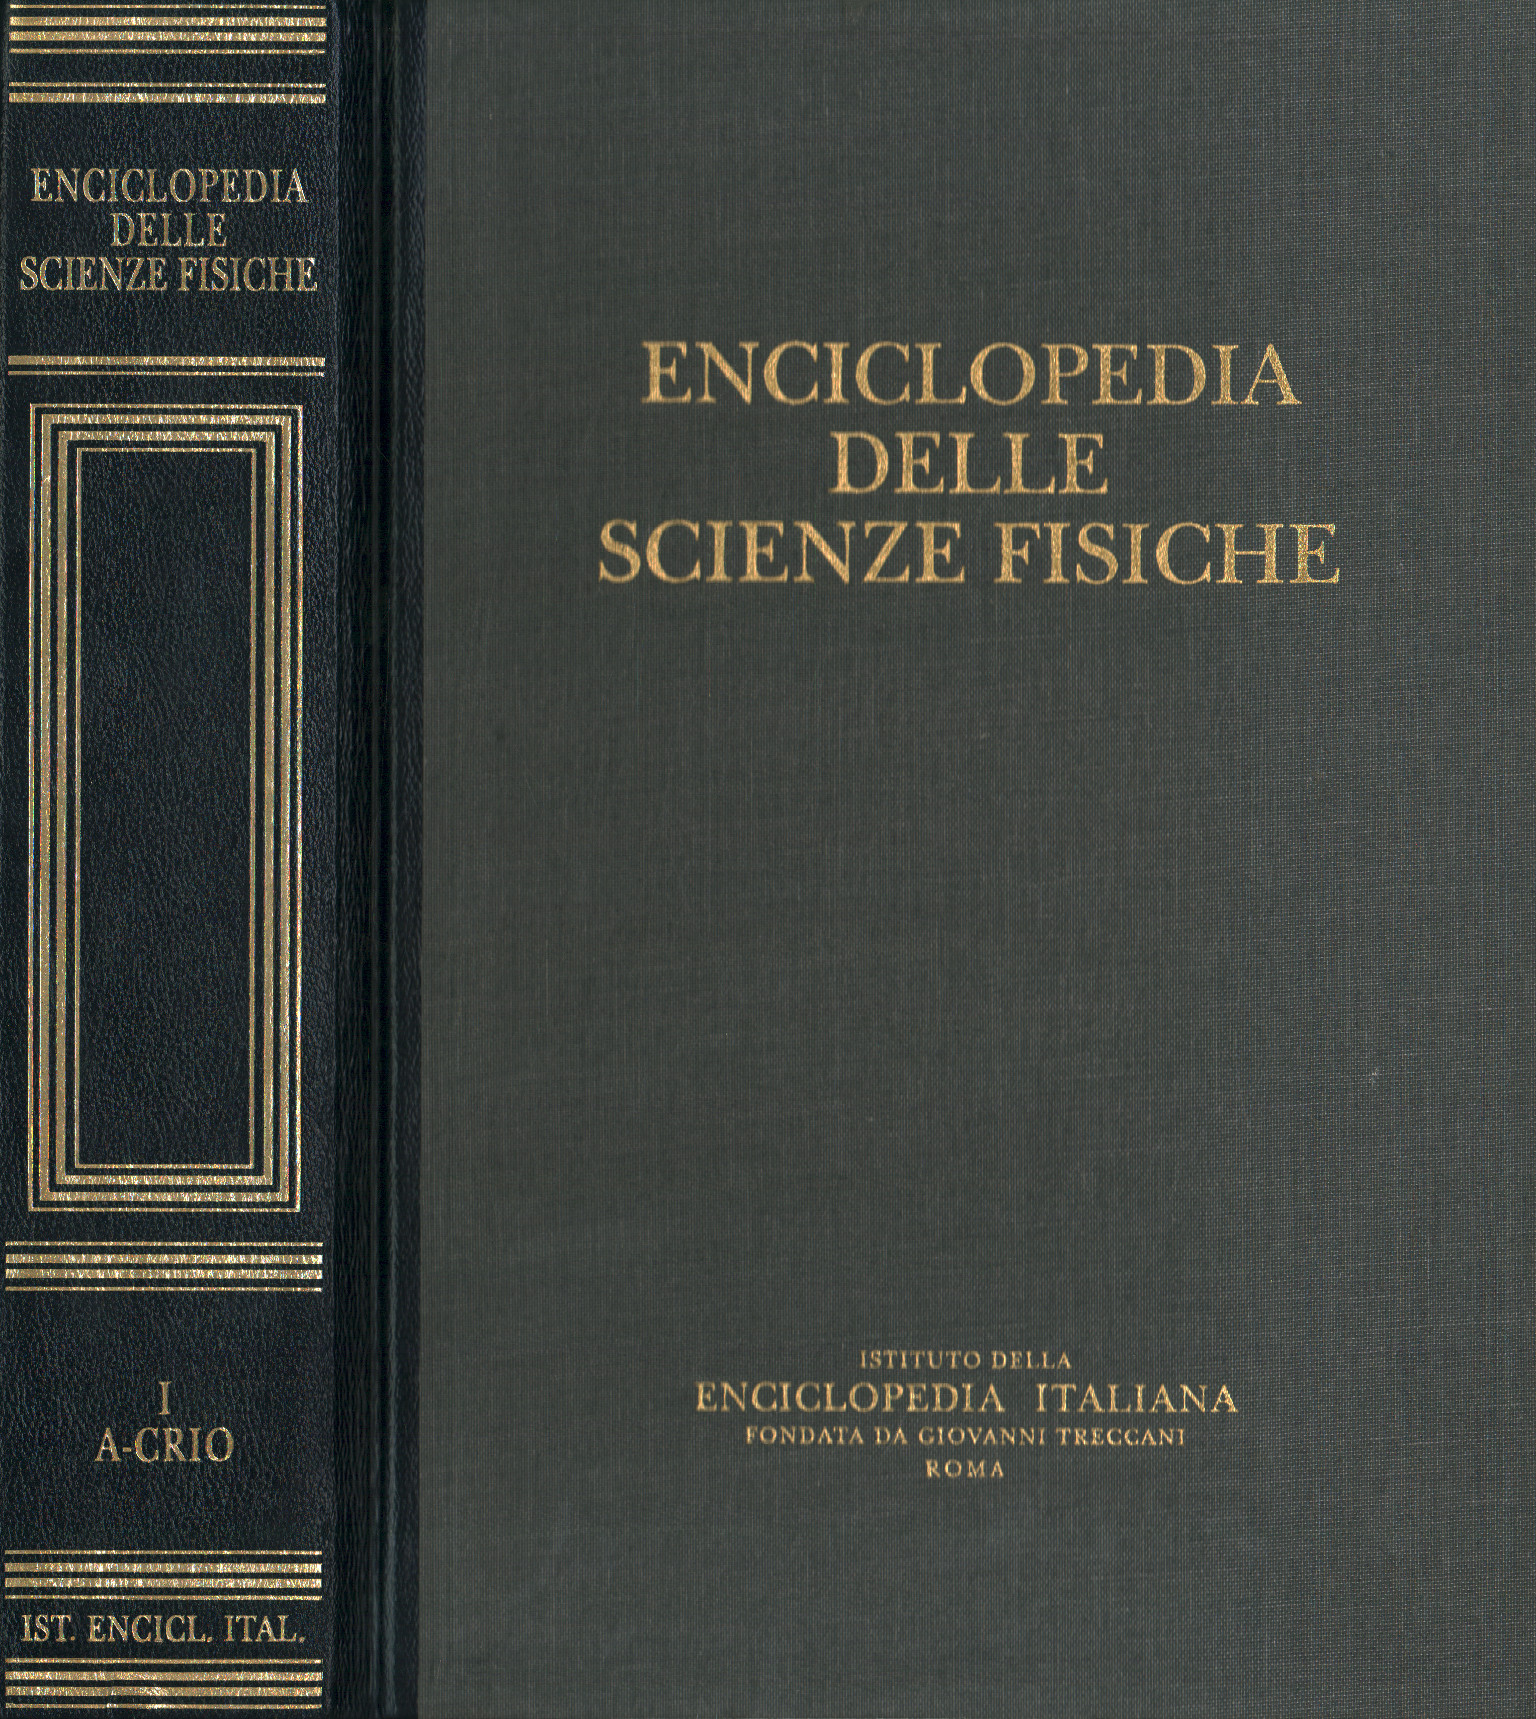 Enzyklopädie der Naturwissenschaften. A-Crio